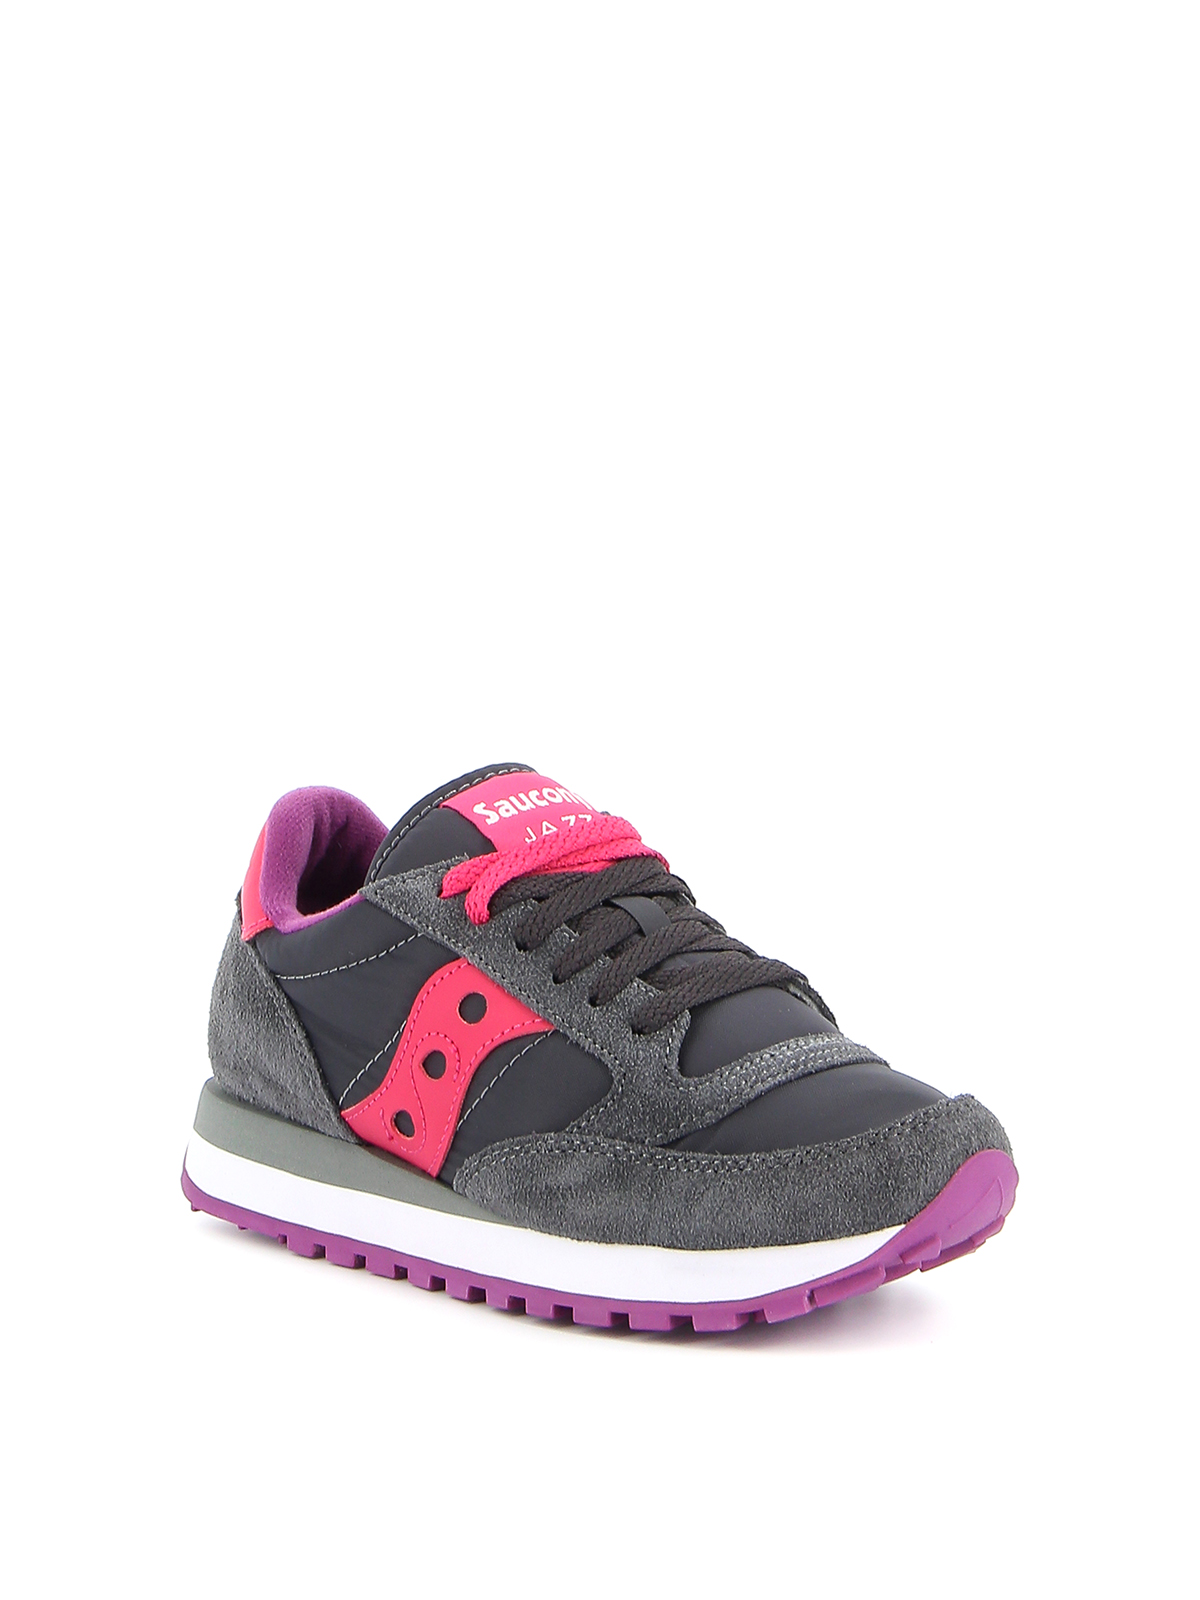 Saucony - Sneaker Jazz Original grigie e rosa - sneakers - S1044324